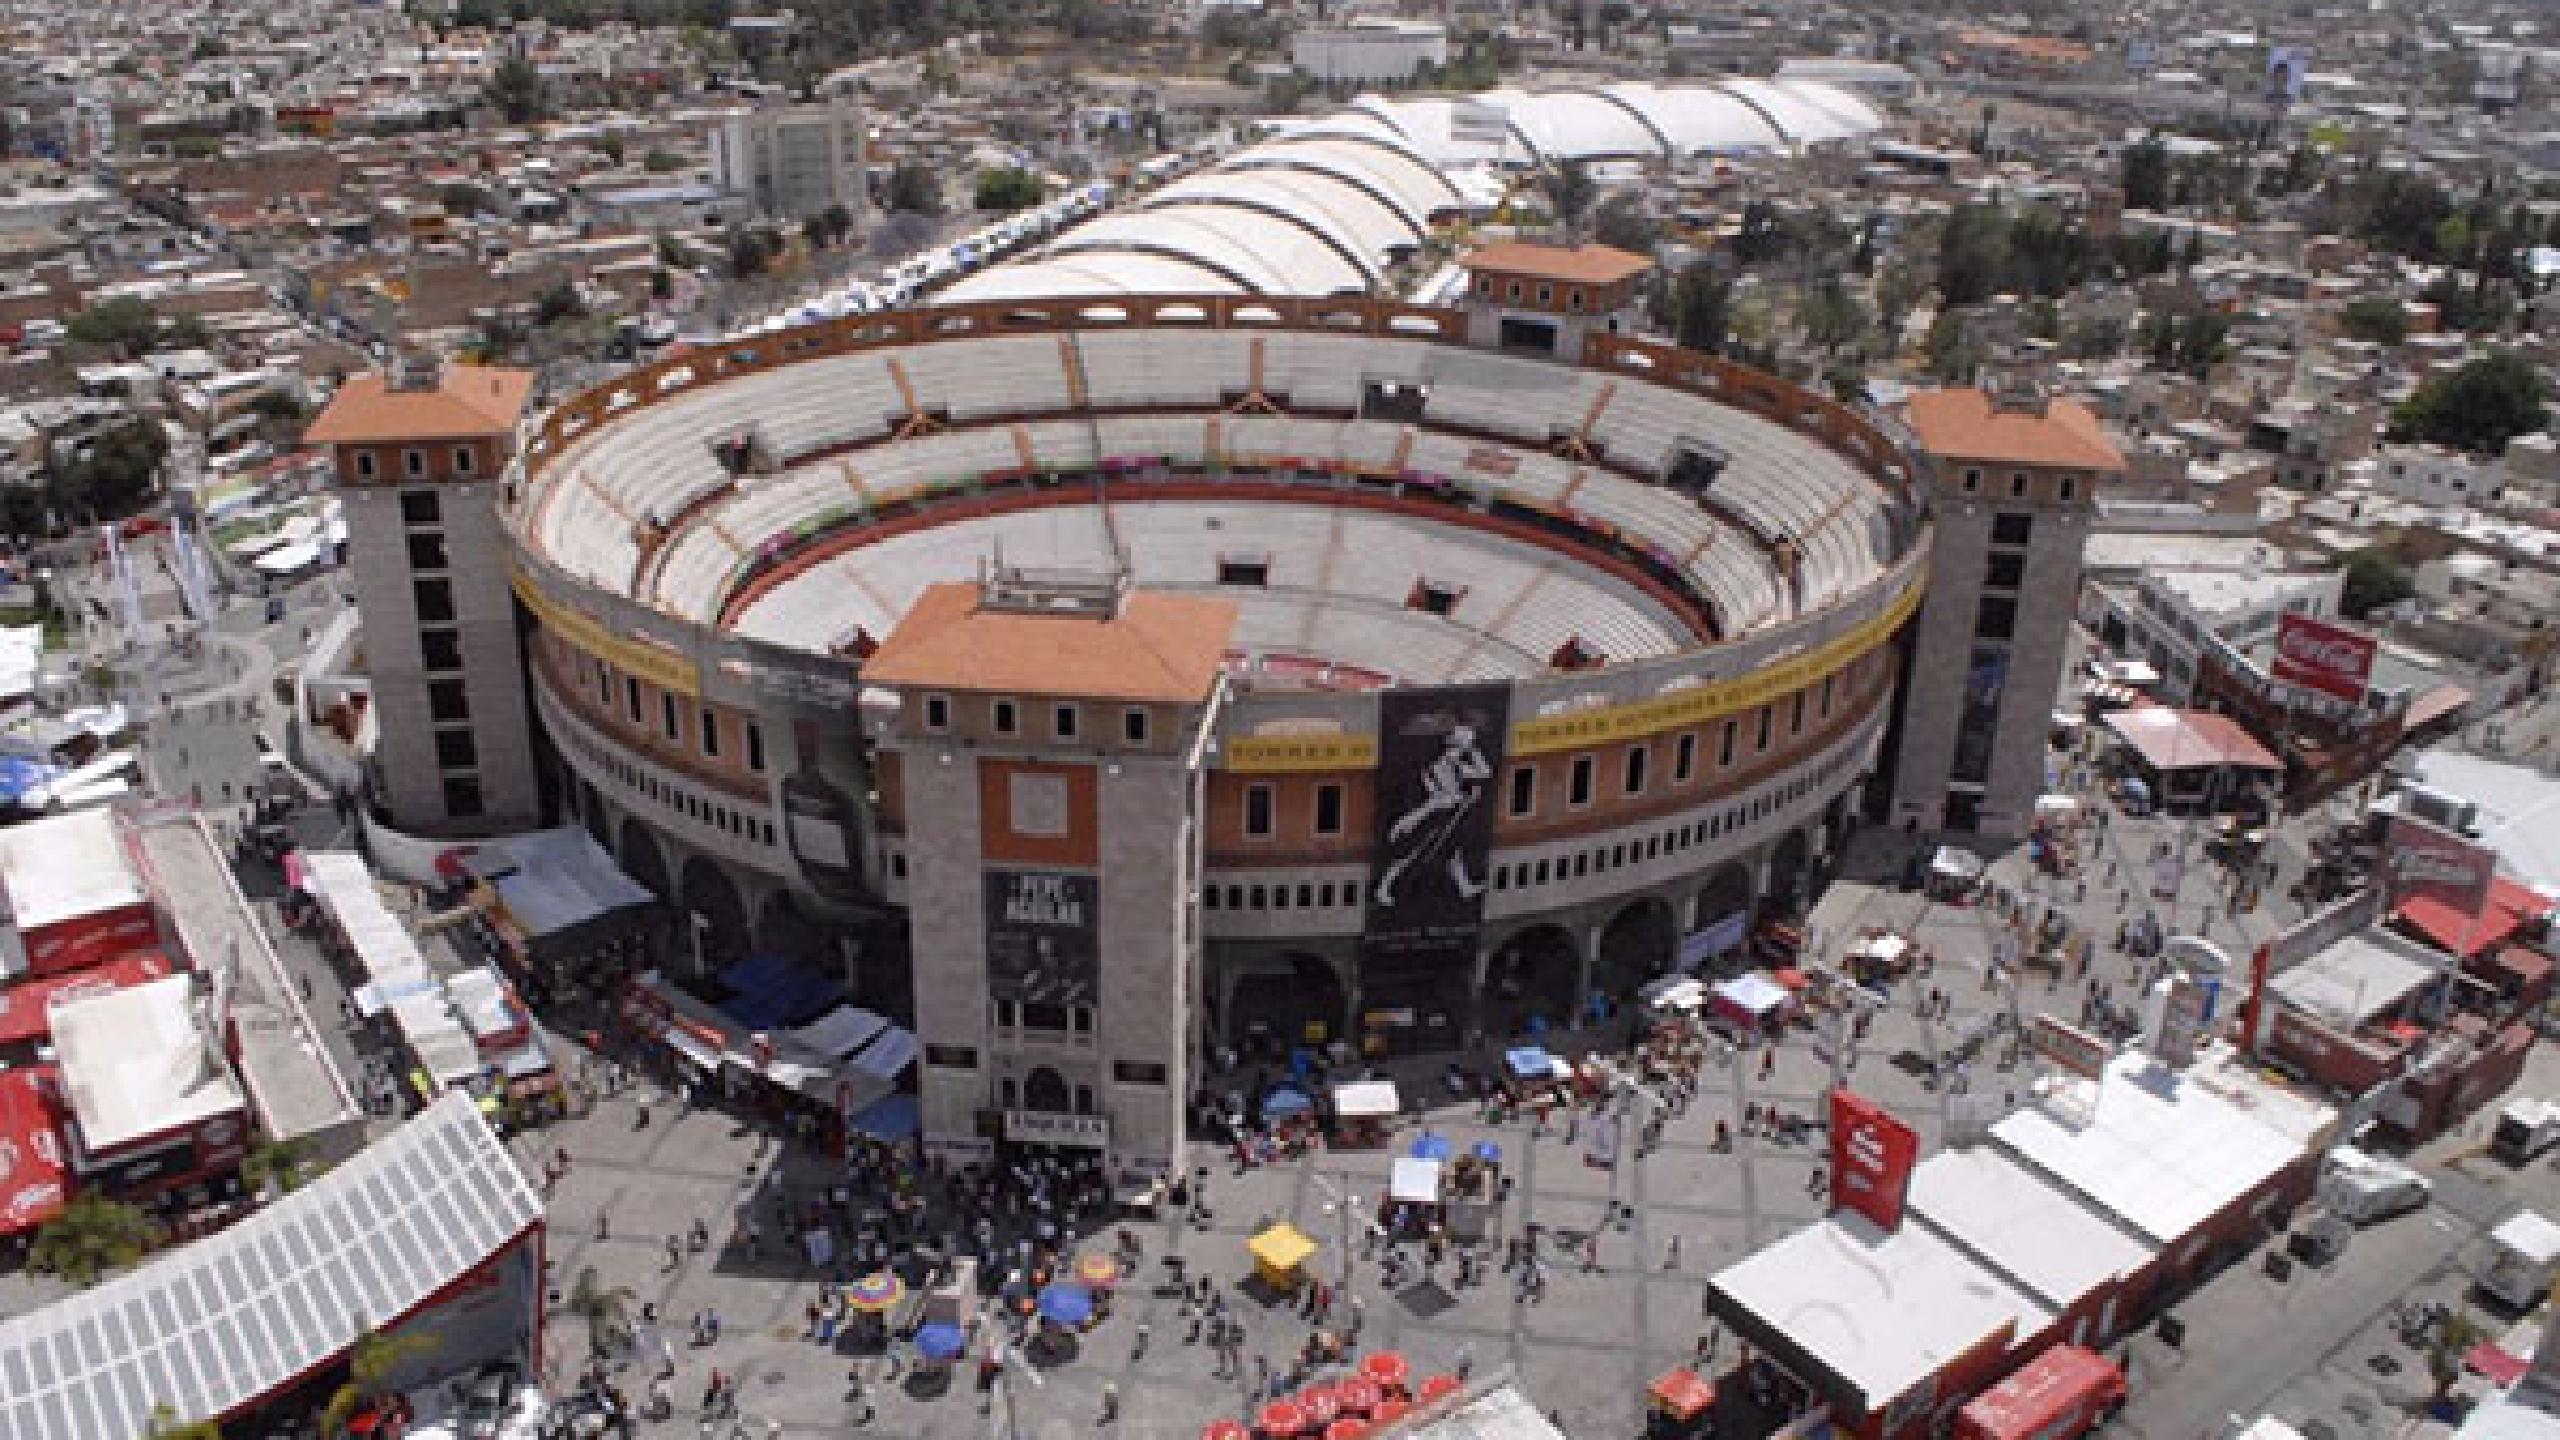 Plaza de Toros Aguascalientes entradas y conciertos 2022 2023 Wegow